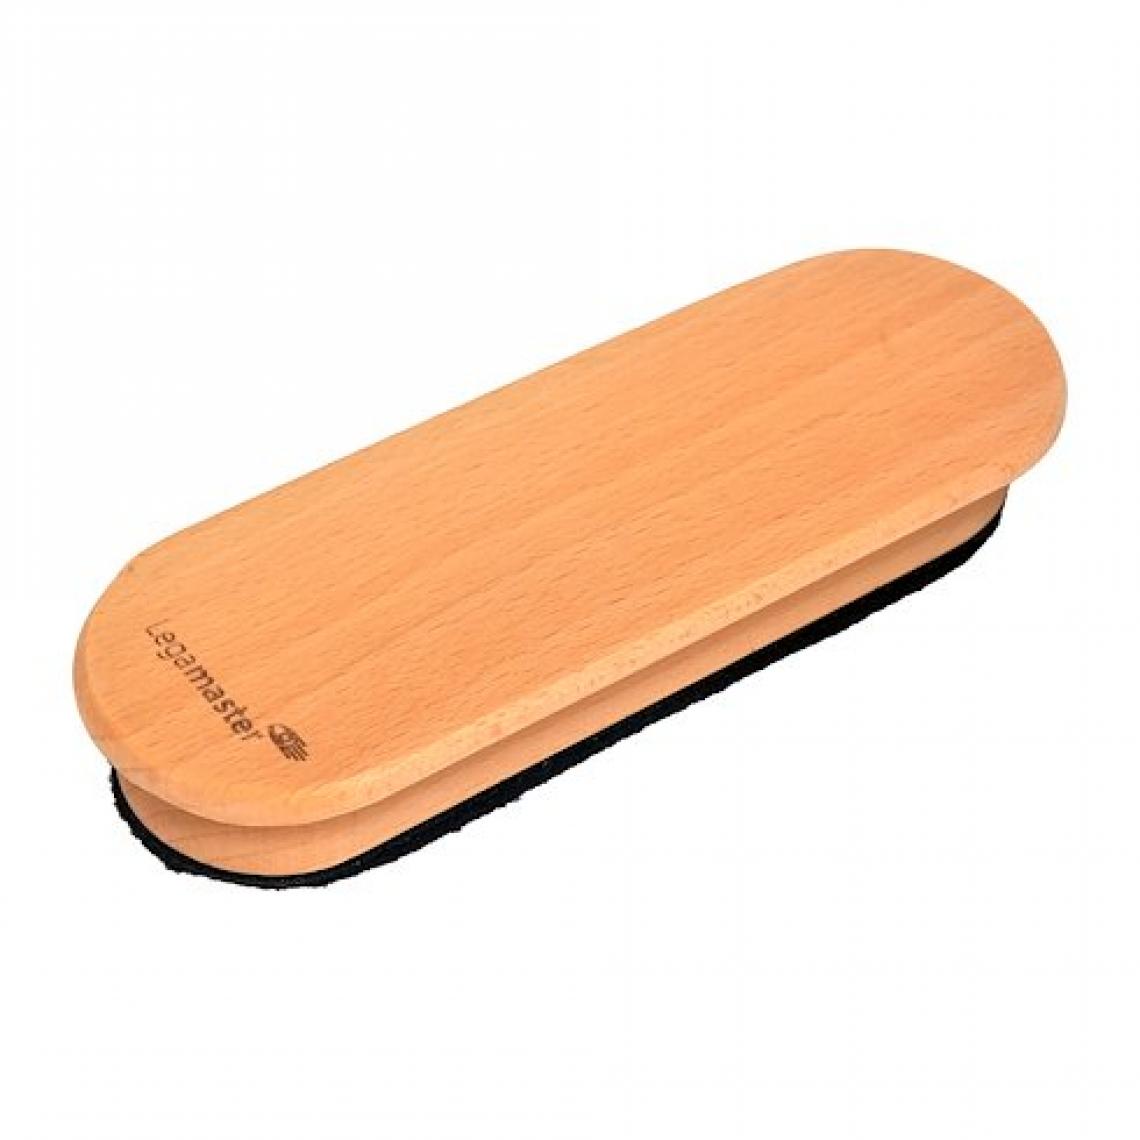 Legamaster - Brosse effaceur magnétique Wooden en bois naturel rechargeable Legamaster pour tableau blanc - Accessoires Bureau